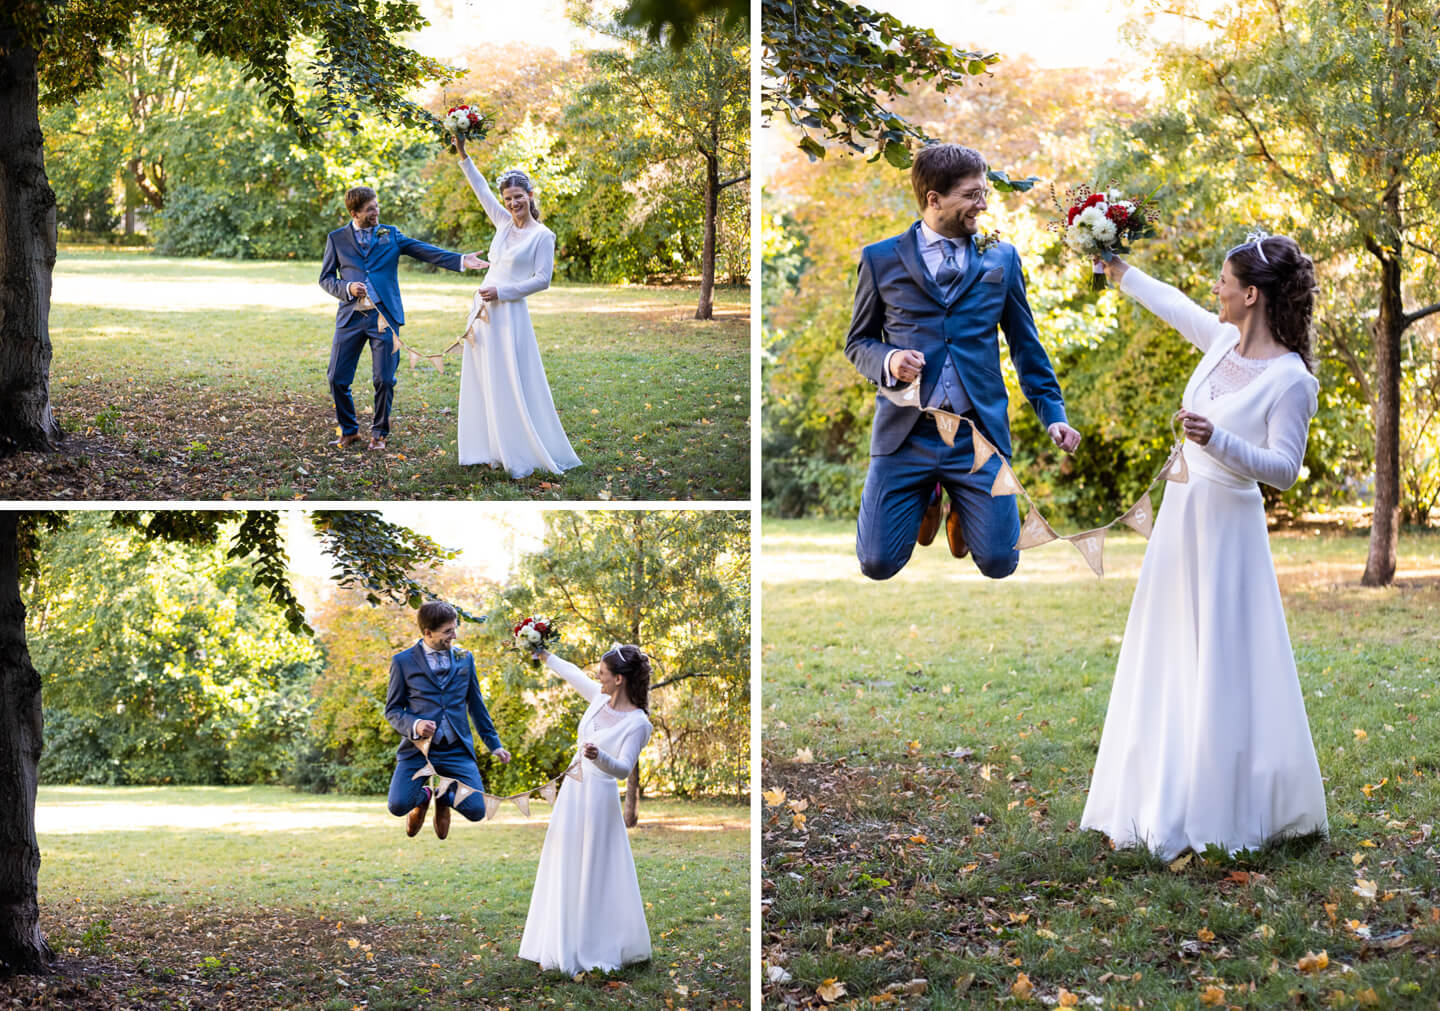 Hochzeit-Beim Brautpaarfotoshooting - Bräutigam springt in die Luft